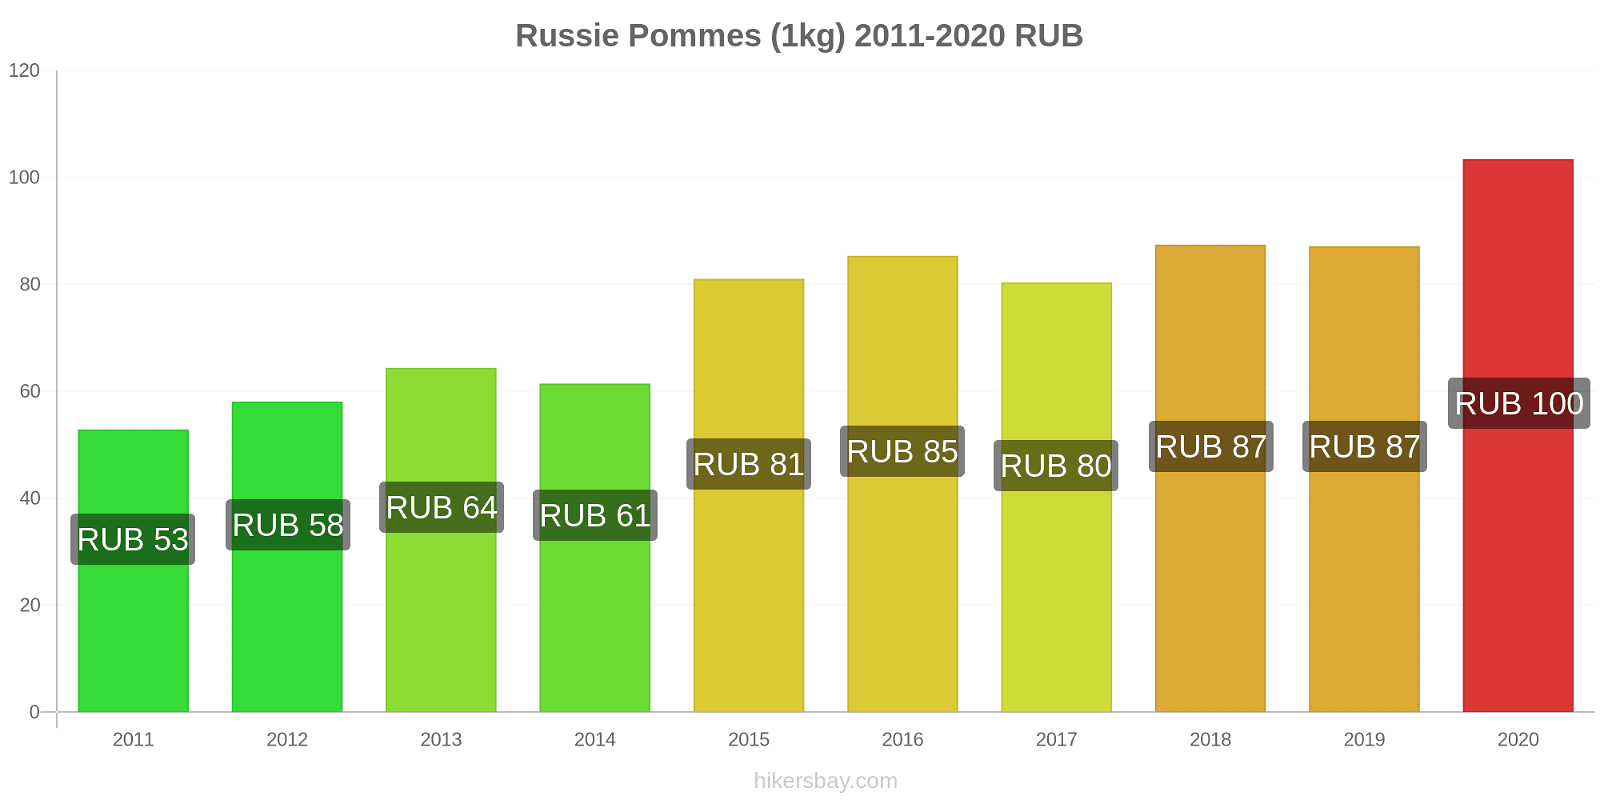 Russie changements de prix Pommes (1kg) hikersbay.com